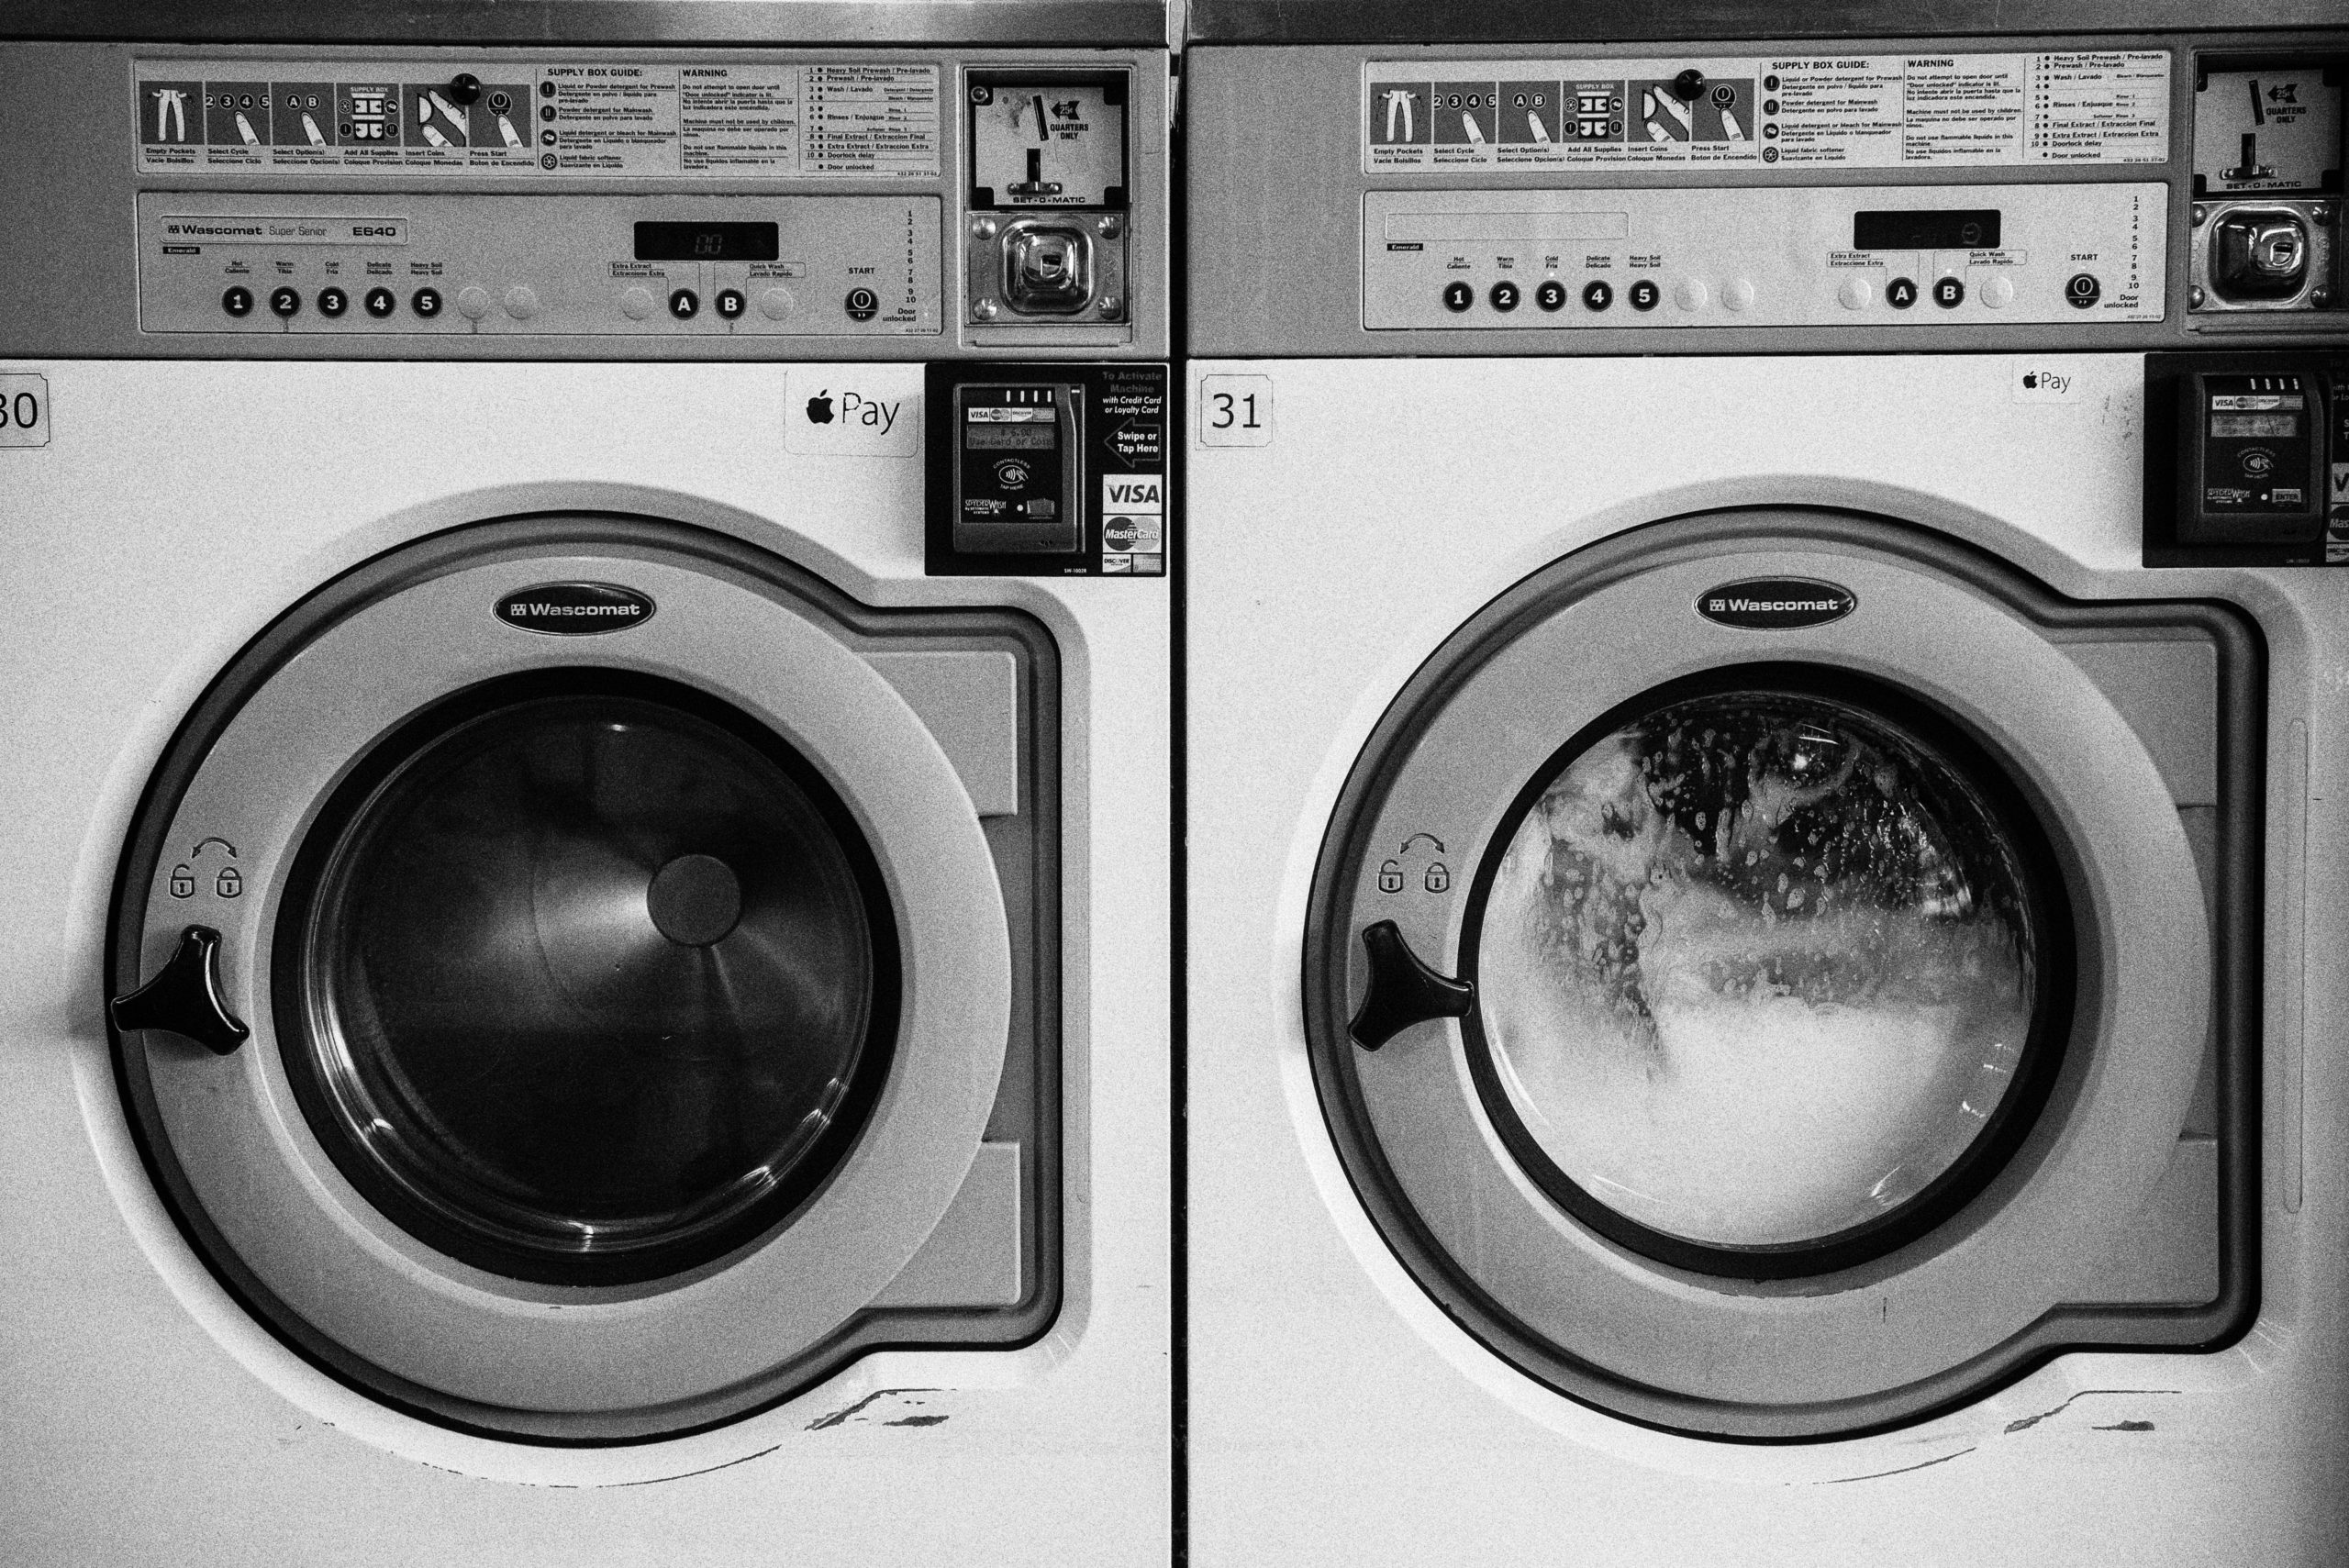 Evita la formación de cal en tu lavadora.